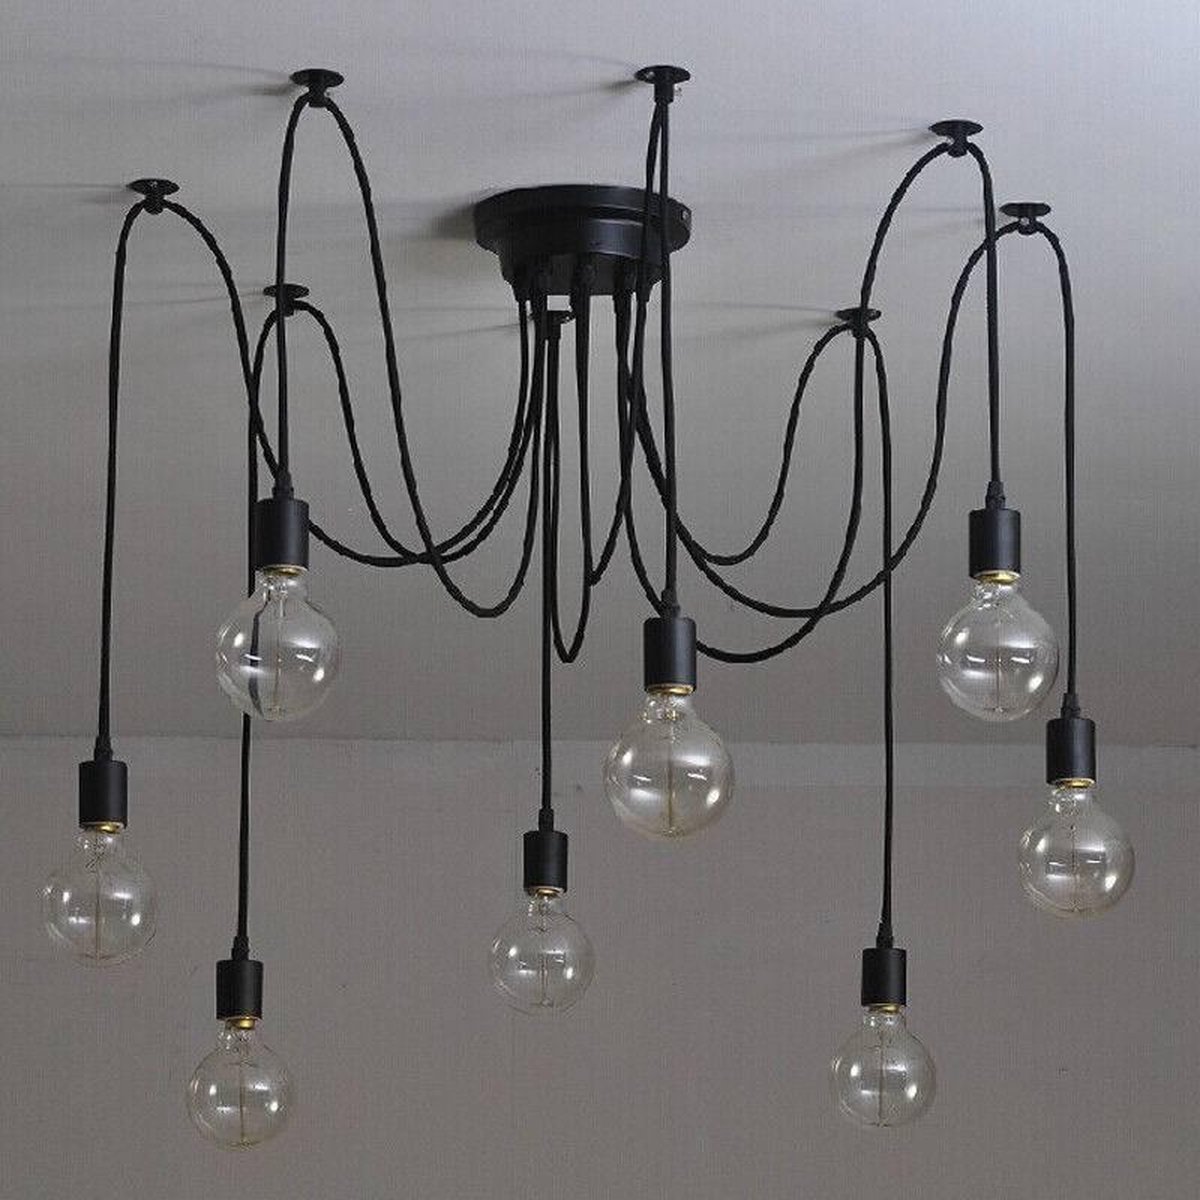 Industriële hanglamp in industrieel design met 8 lampen